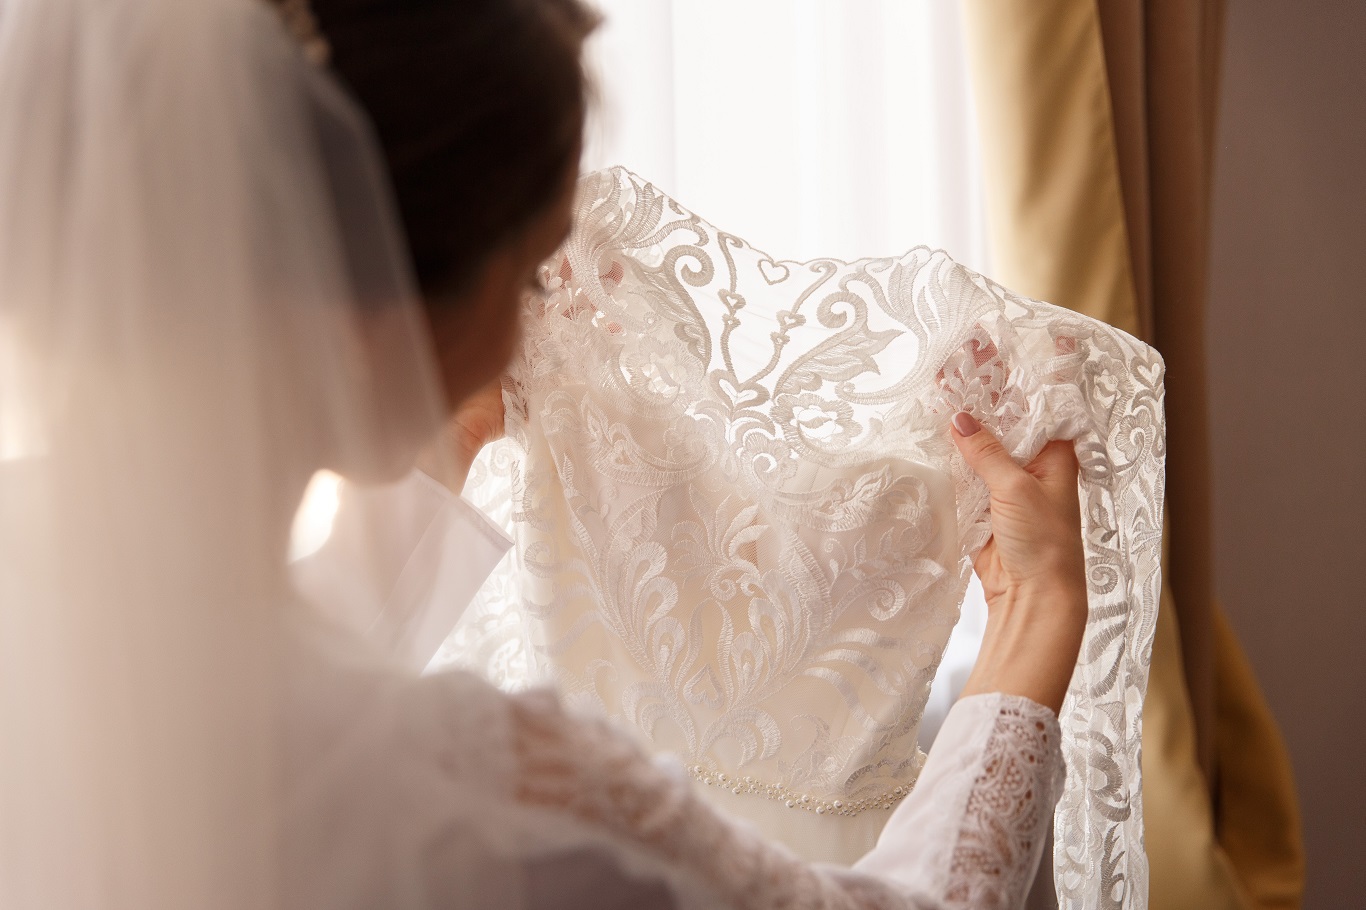 Quiso hacerle una broma a su cuñada y manchó su vestido de 300 dólares en pleno casamiento (Foto: Adobe Stock / Por Wedding photography).